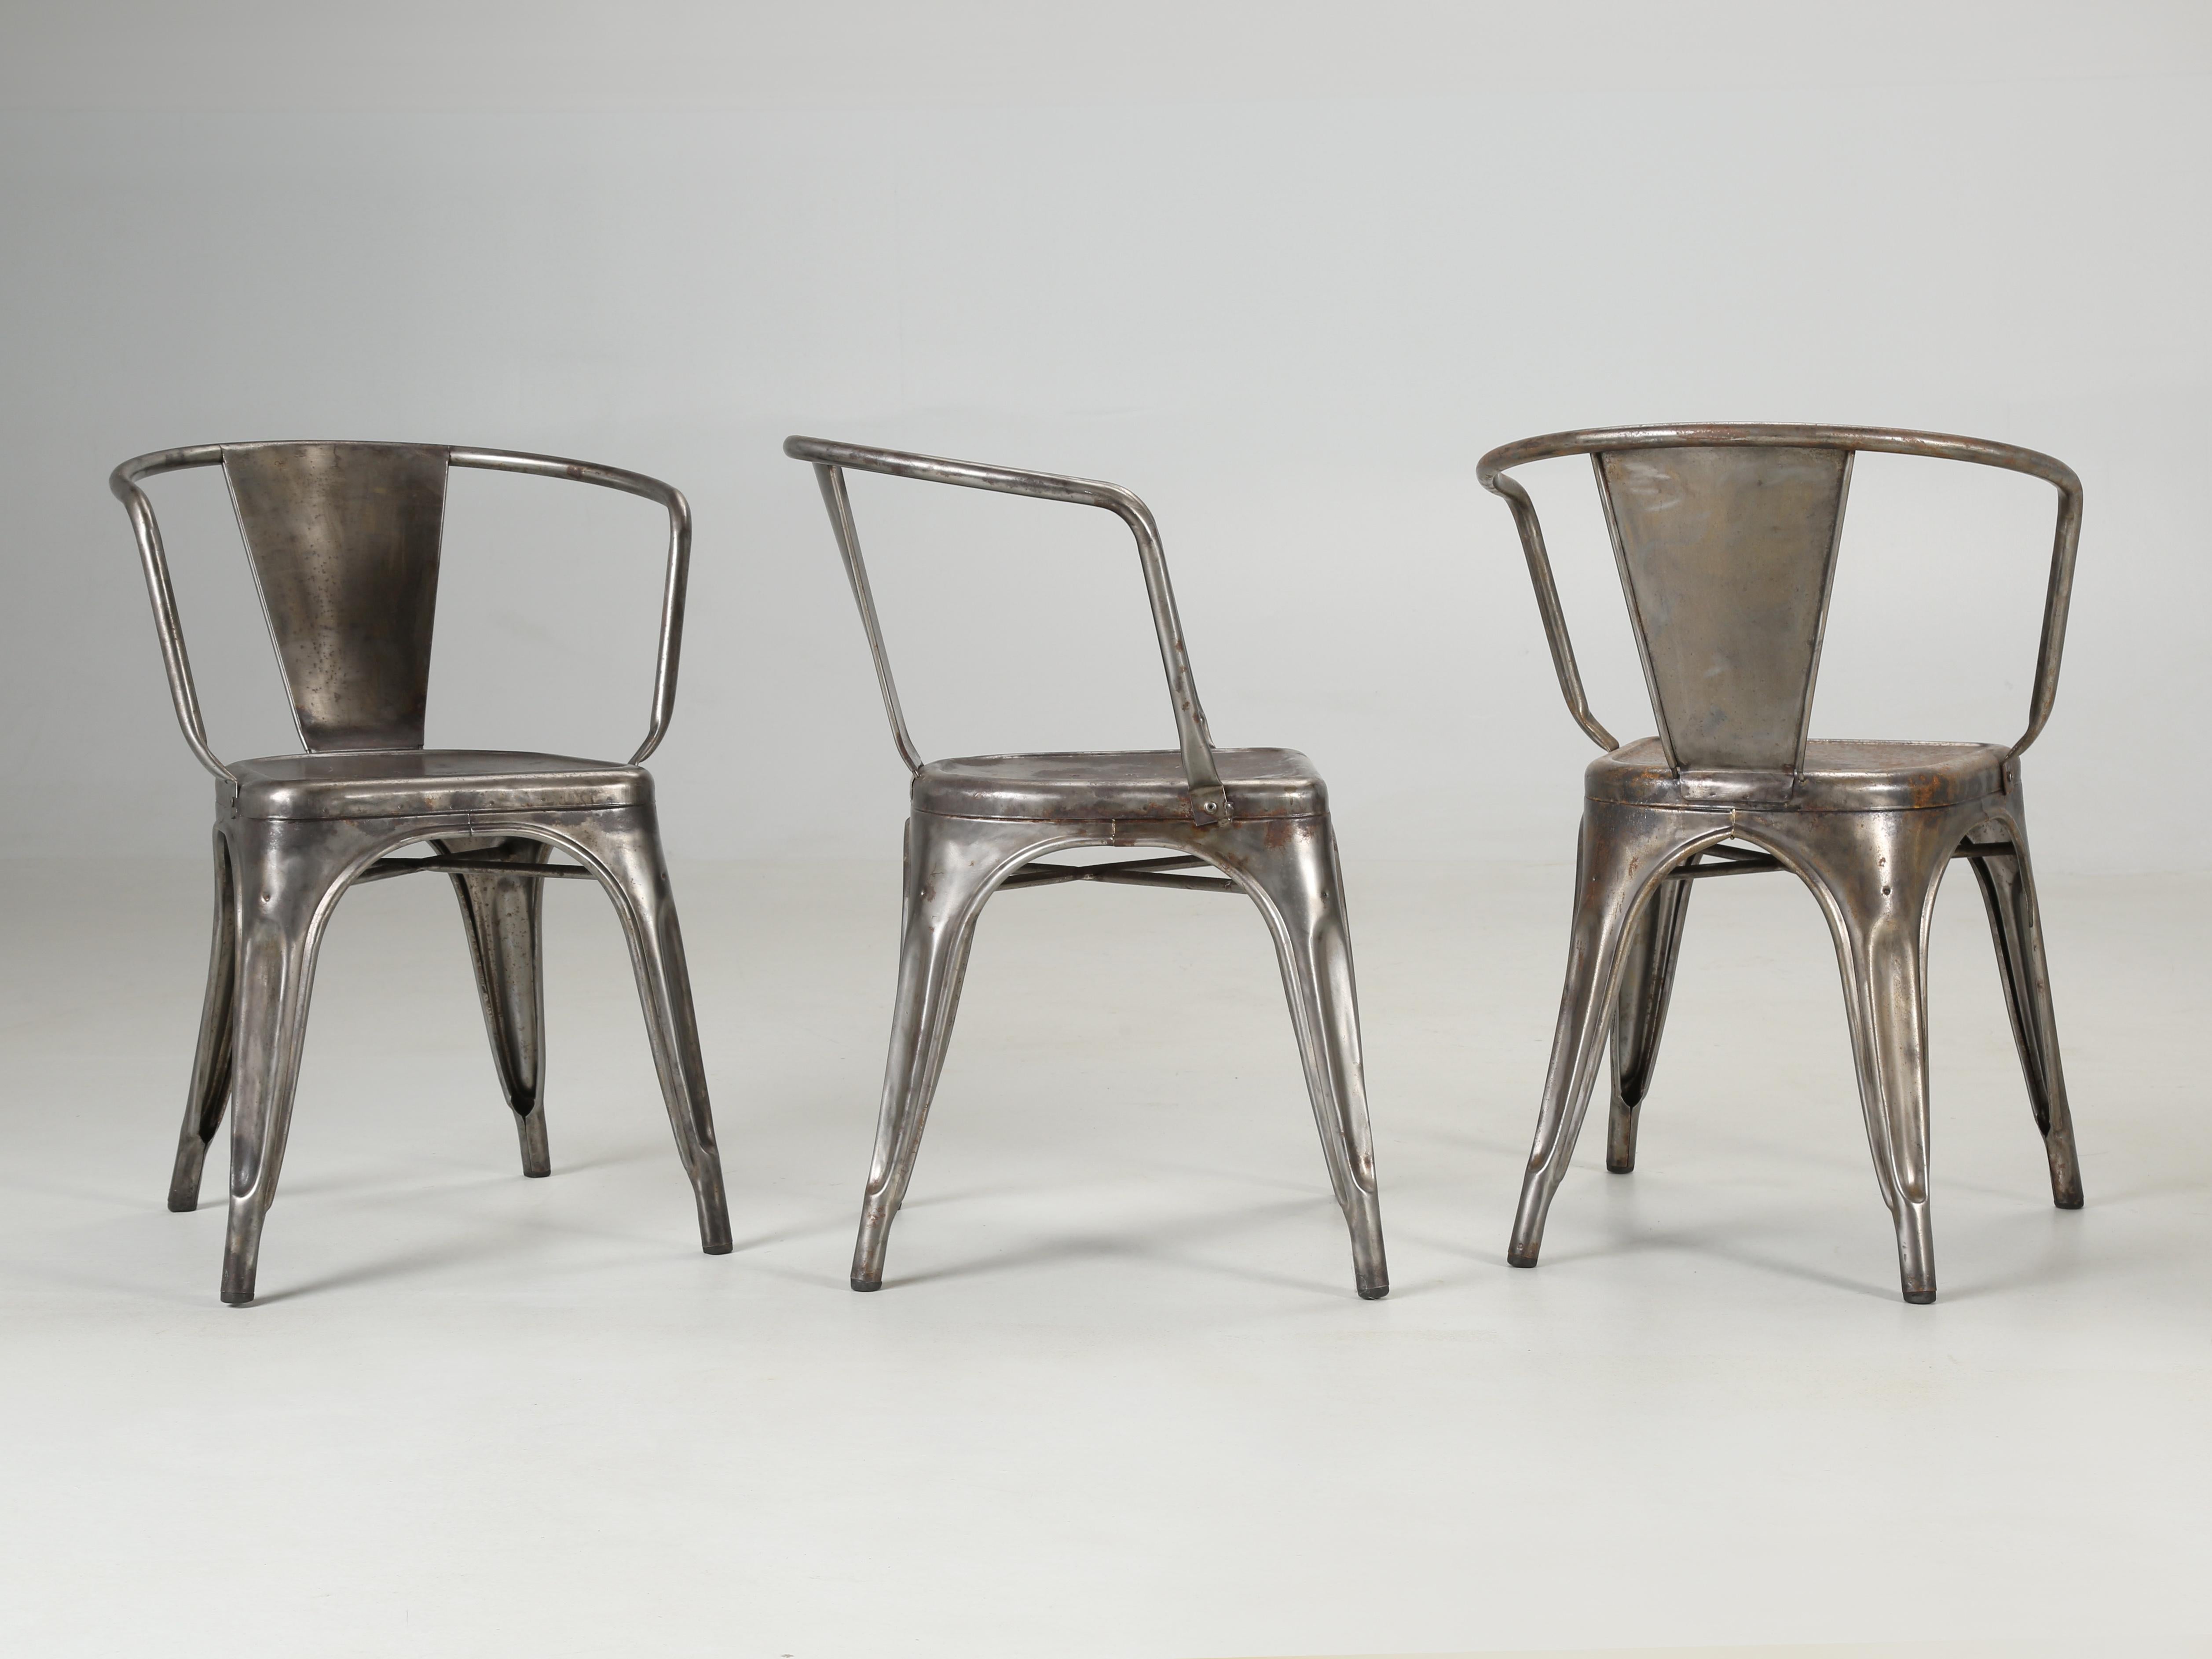 Les fameuses chaises empilables en acier Tolix ont été inventées par un couvreur français du nom de Xavier Pauchard. Dès que le public a réalisé à quel point il était pratique d'empiler vos chaises Tolix, en toute sécurité jusqu'à (12) hauteurs,